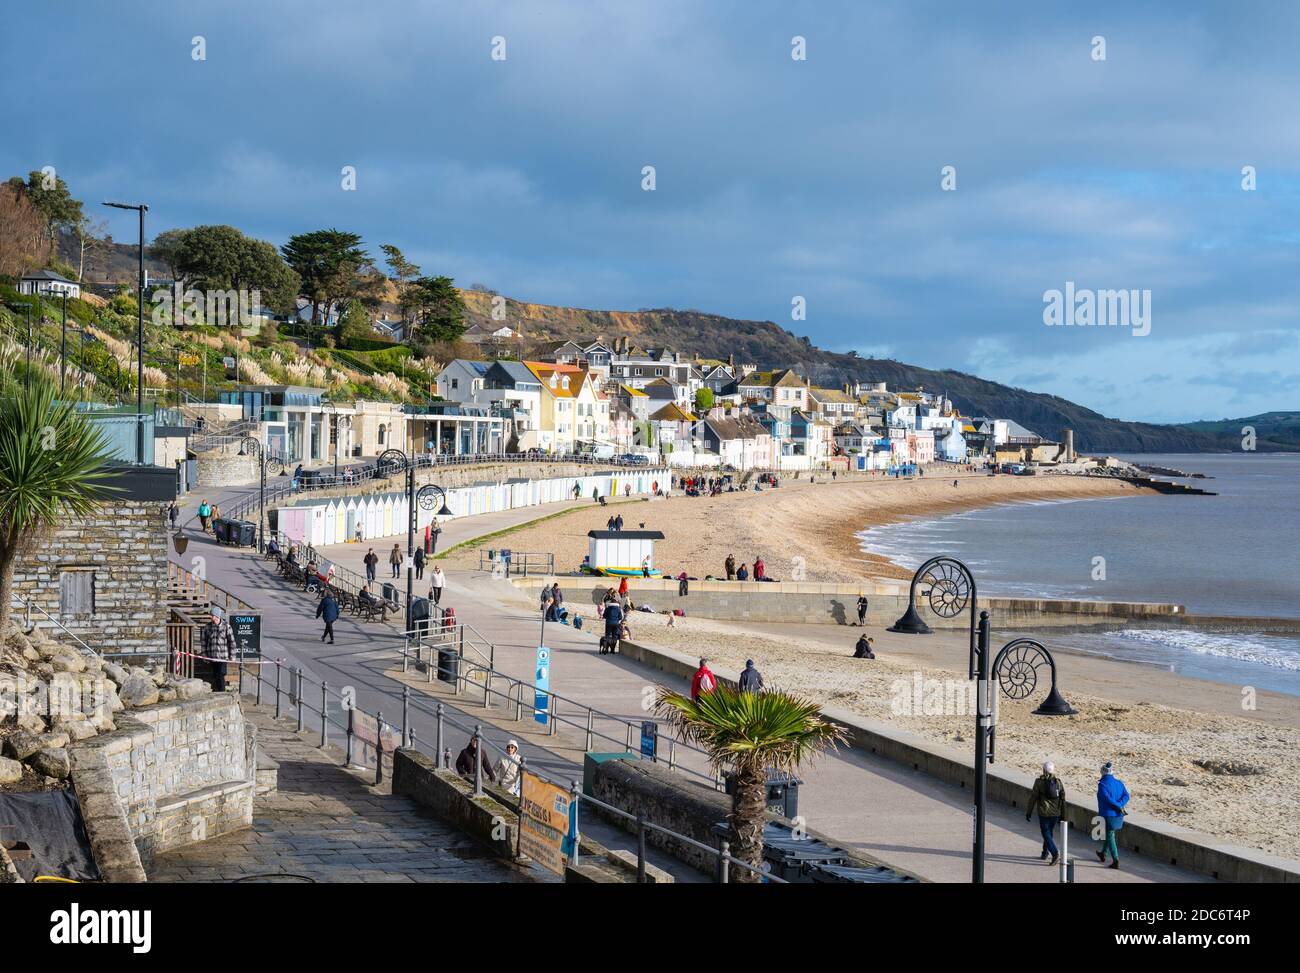 Lyme Regis, Dorset, Reino Unido. 19 de noviembre de 2020. El tiempo en el Reino Unido: Bright Sunny hechizos en el balneario de Lyme Regis. Los lugareños disfrutan de un breve respiro del tiempo aburrido y húmedo. Crédito: Celia McMahon/Alamy Live News Foto de stock